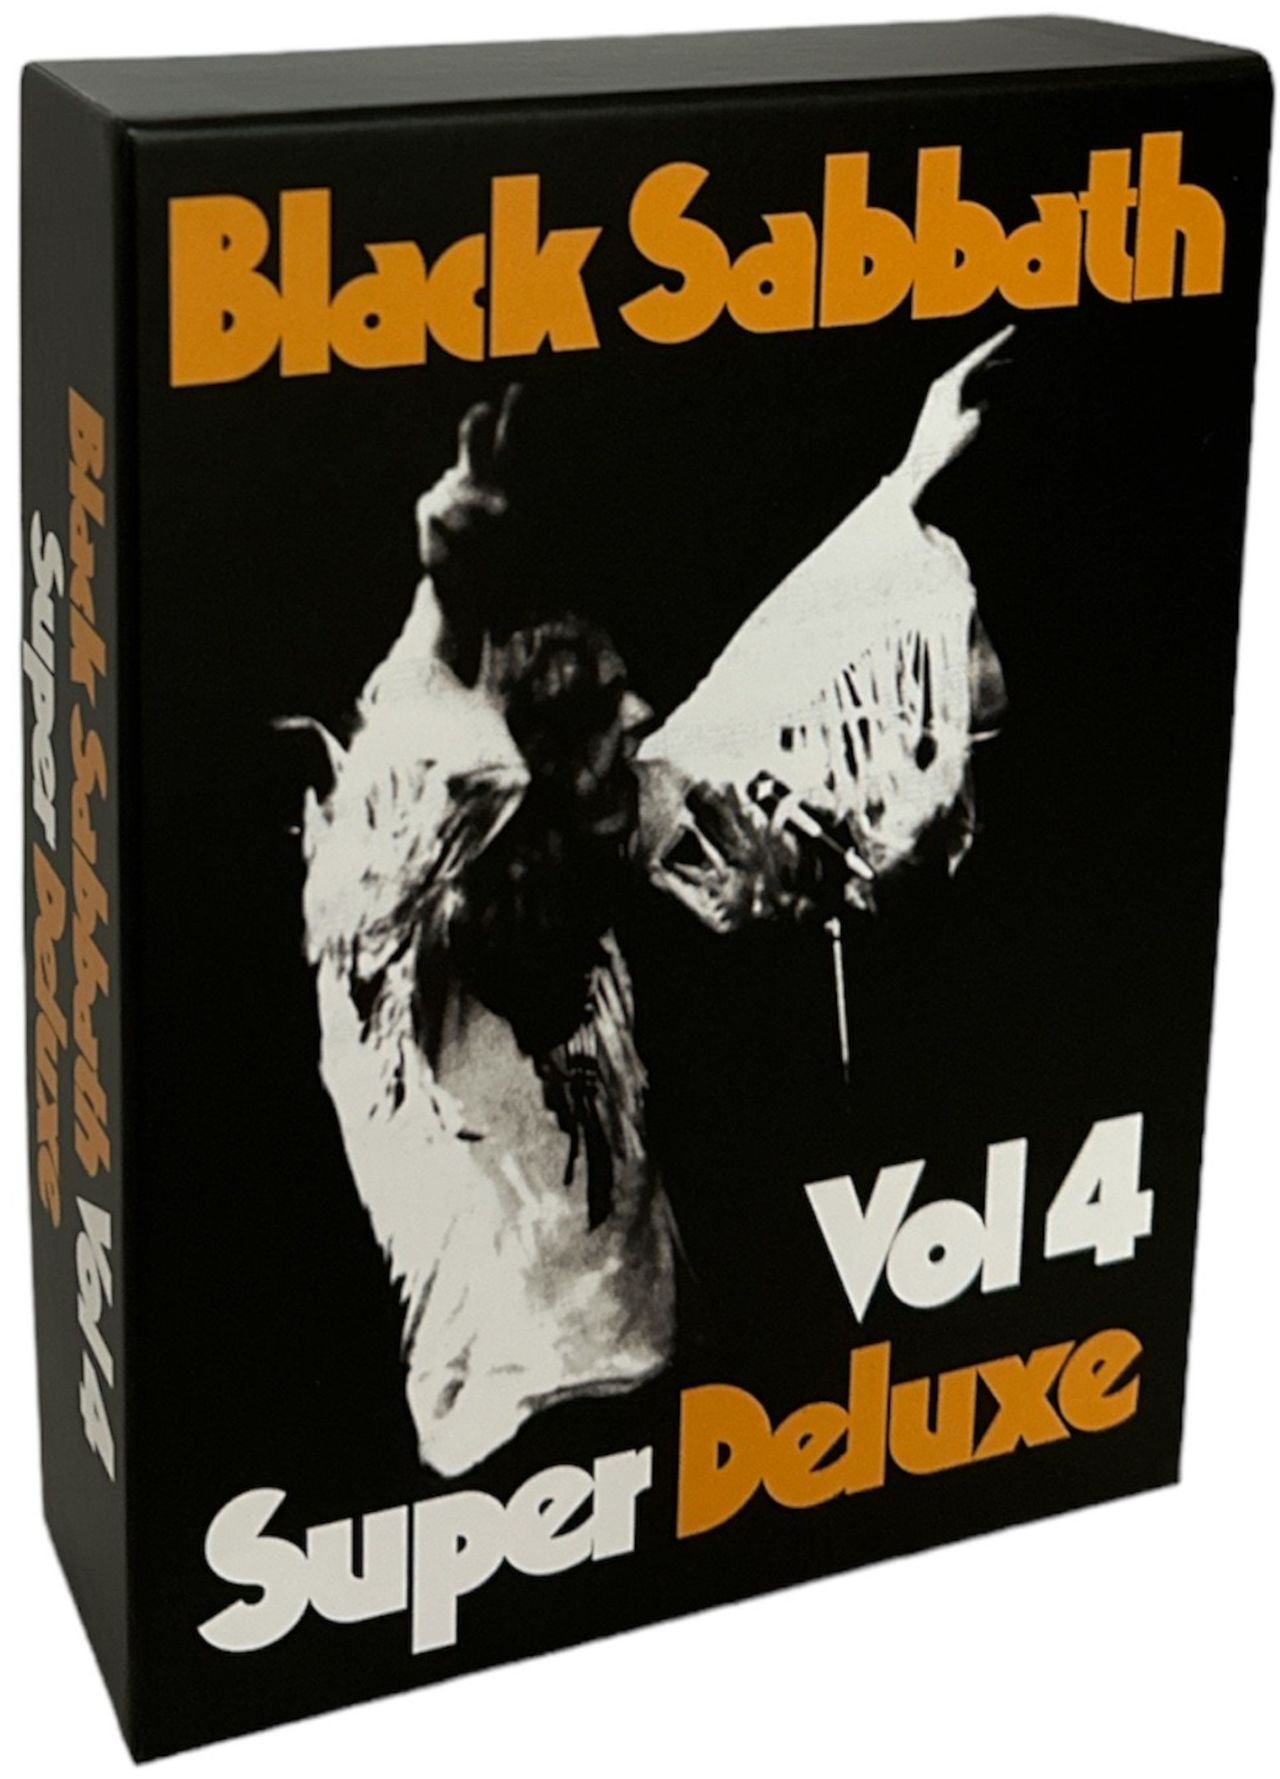 Black Sabbath- Vol. 4- Chnges 